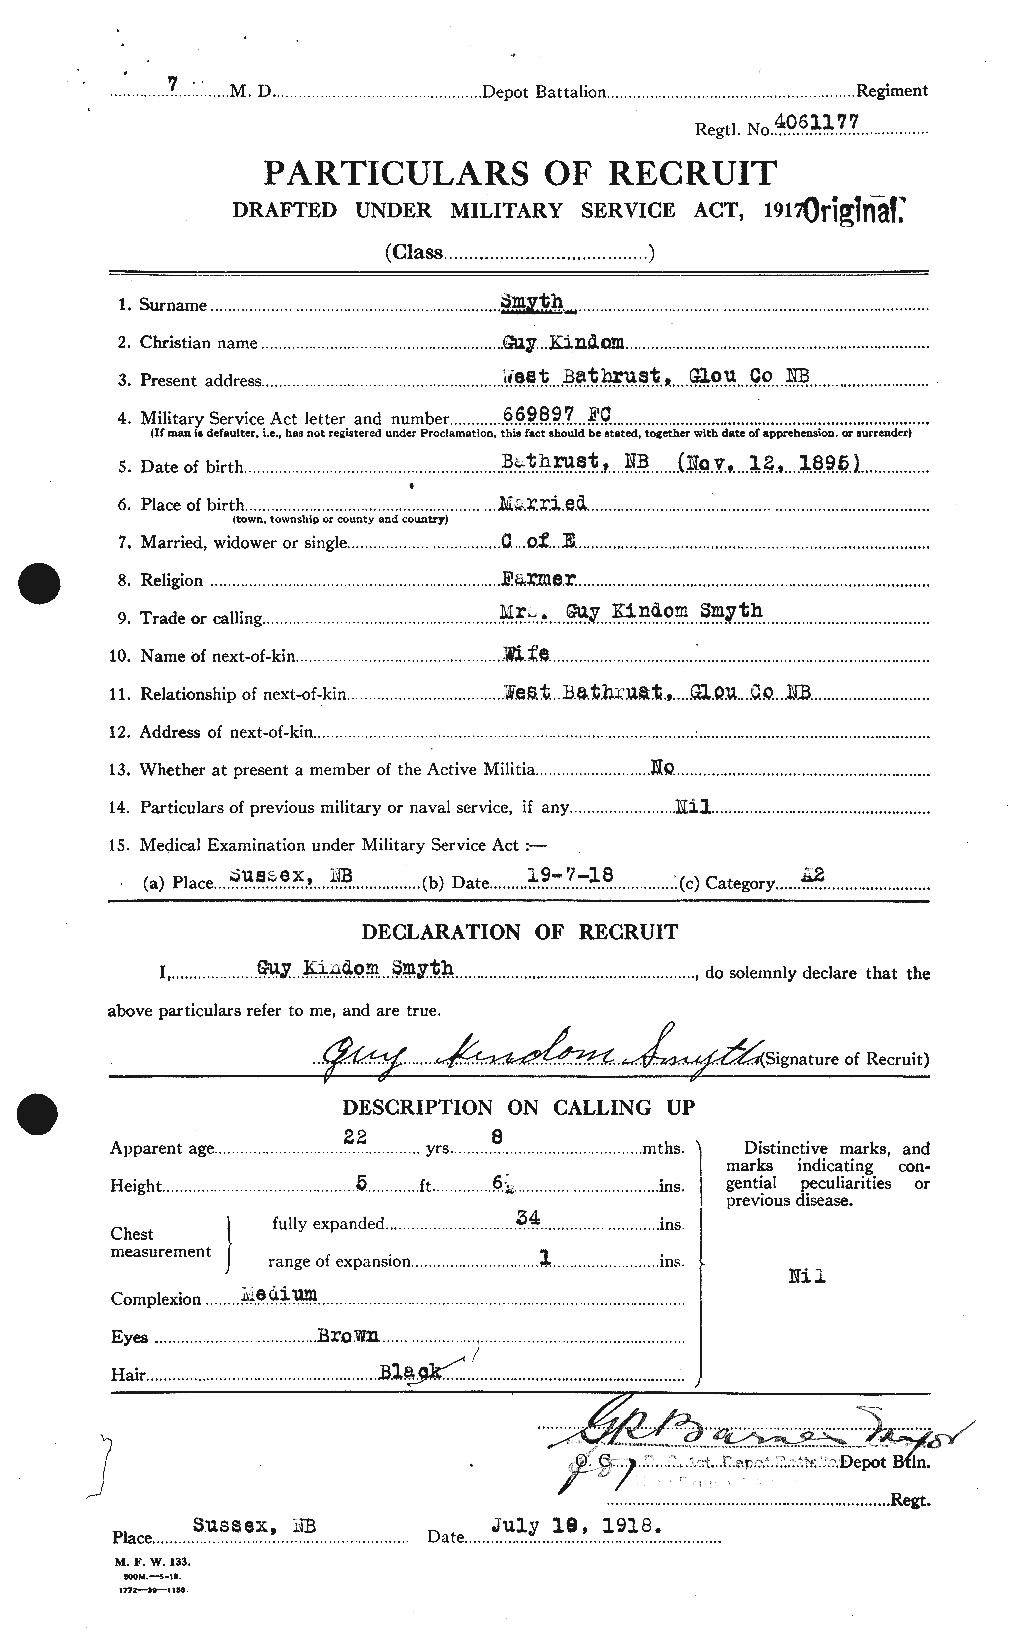 Dossiers du Personnel de la Première Guerre mondiale - CEC 101053a